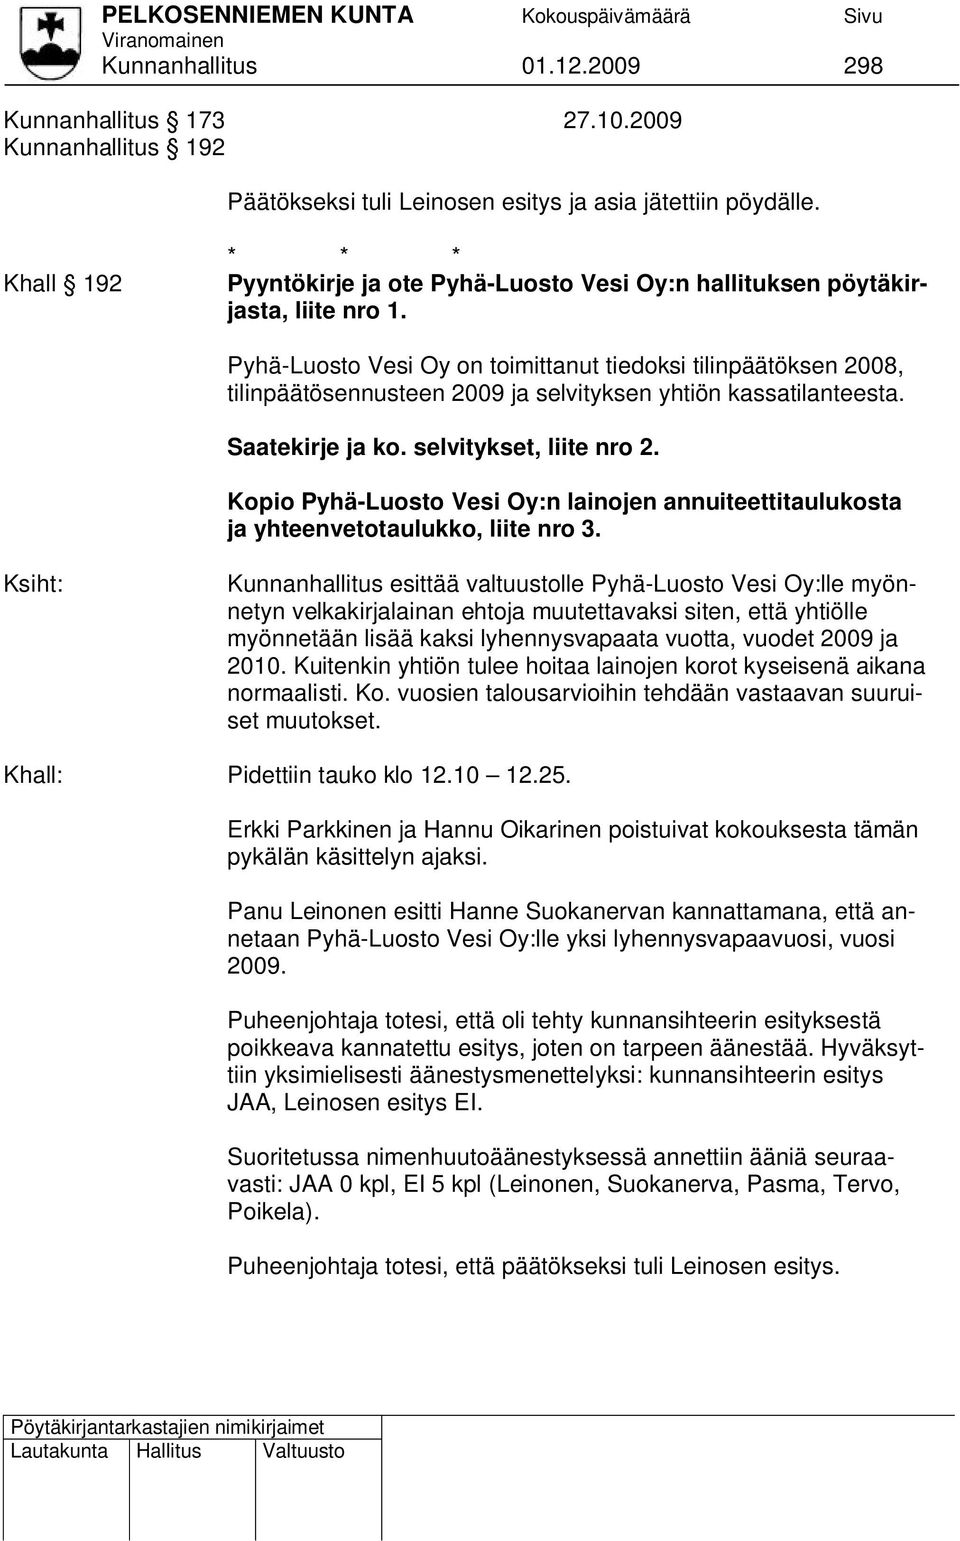 Pyhä-Luosto Vesi Oy on toimittanut tiedoksi tilinpäätöksen 2008, tilinpäätösennusteen 2009 ja selvityksen yhtiön kassatilanteesta. Saatekirje ja ko. selvitykset, liite nro 2.